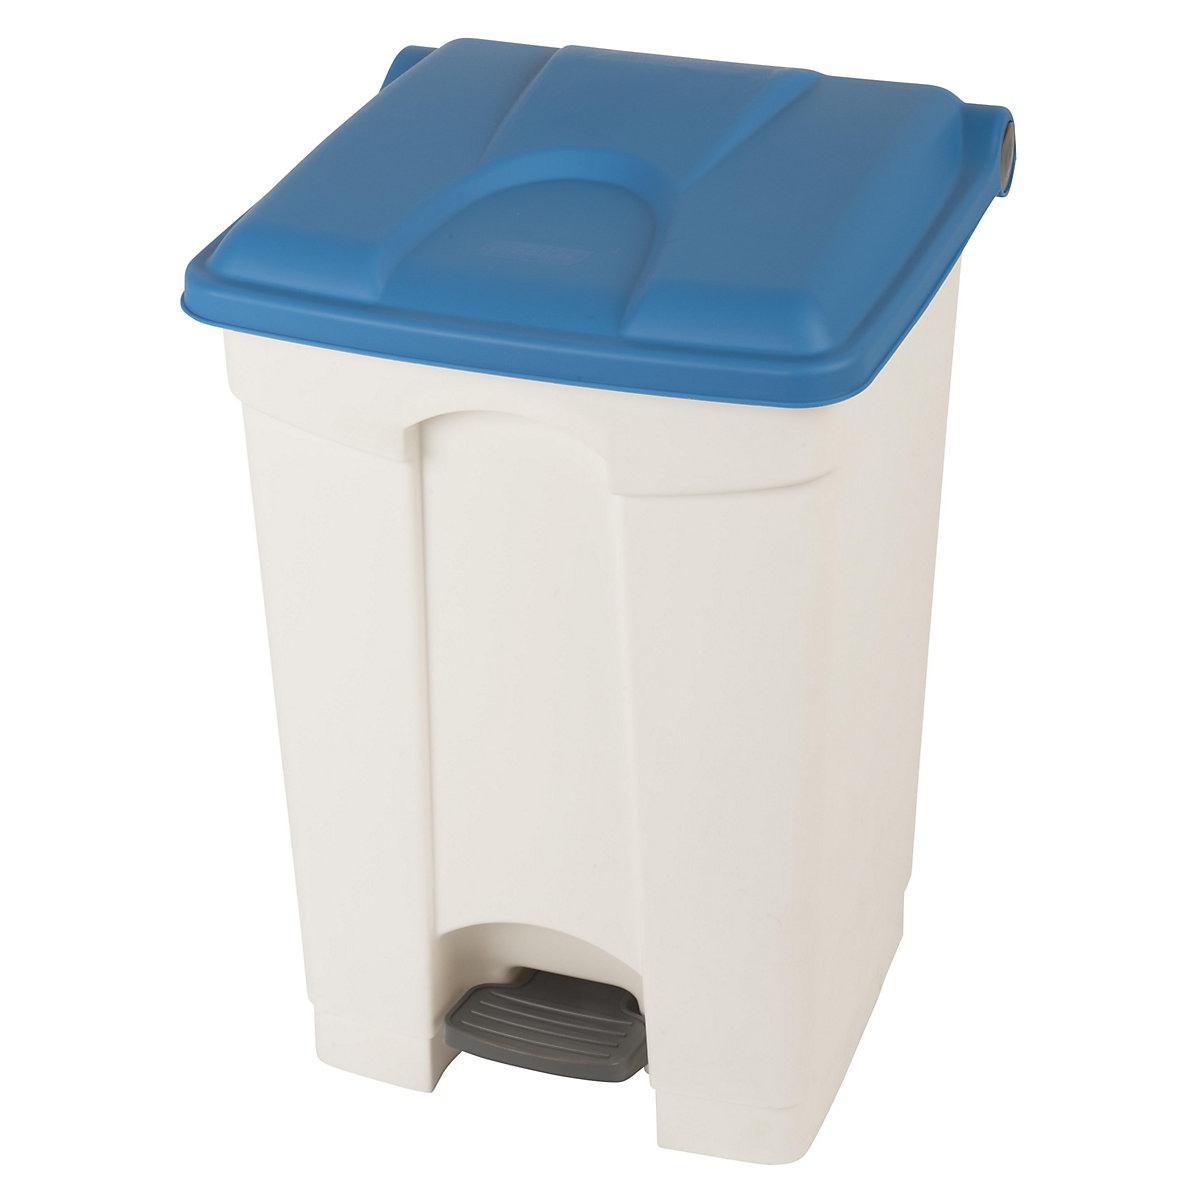 EUROKRAFTbasic – Nádoba na odpad s pedálem, objem 45 l, š x v x h 410 x 600 x 400 mm, bílá, modré víko